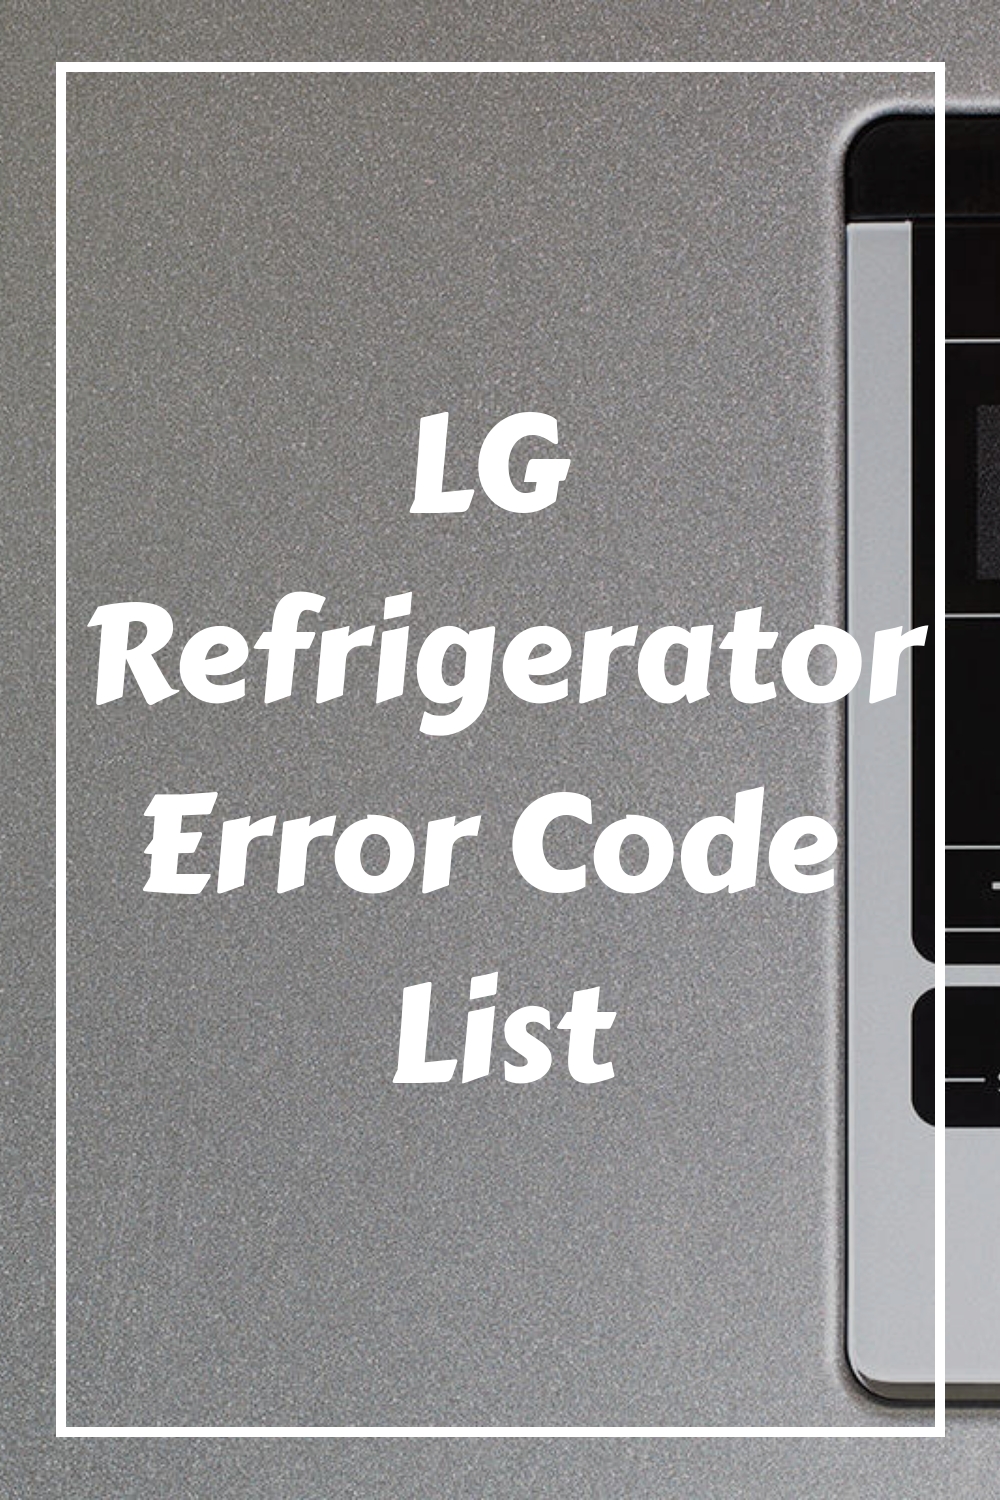 LG Refrigerator Error Code List - HowdyKitchen